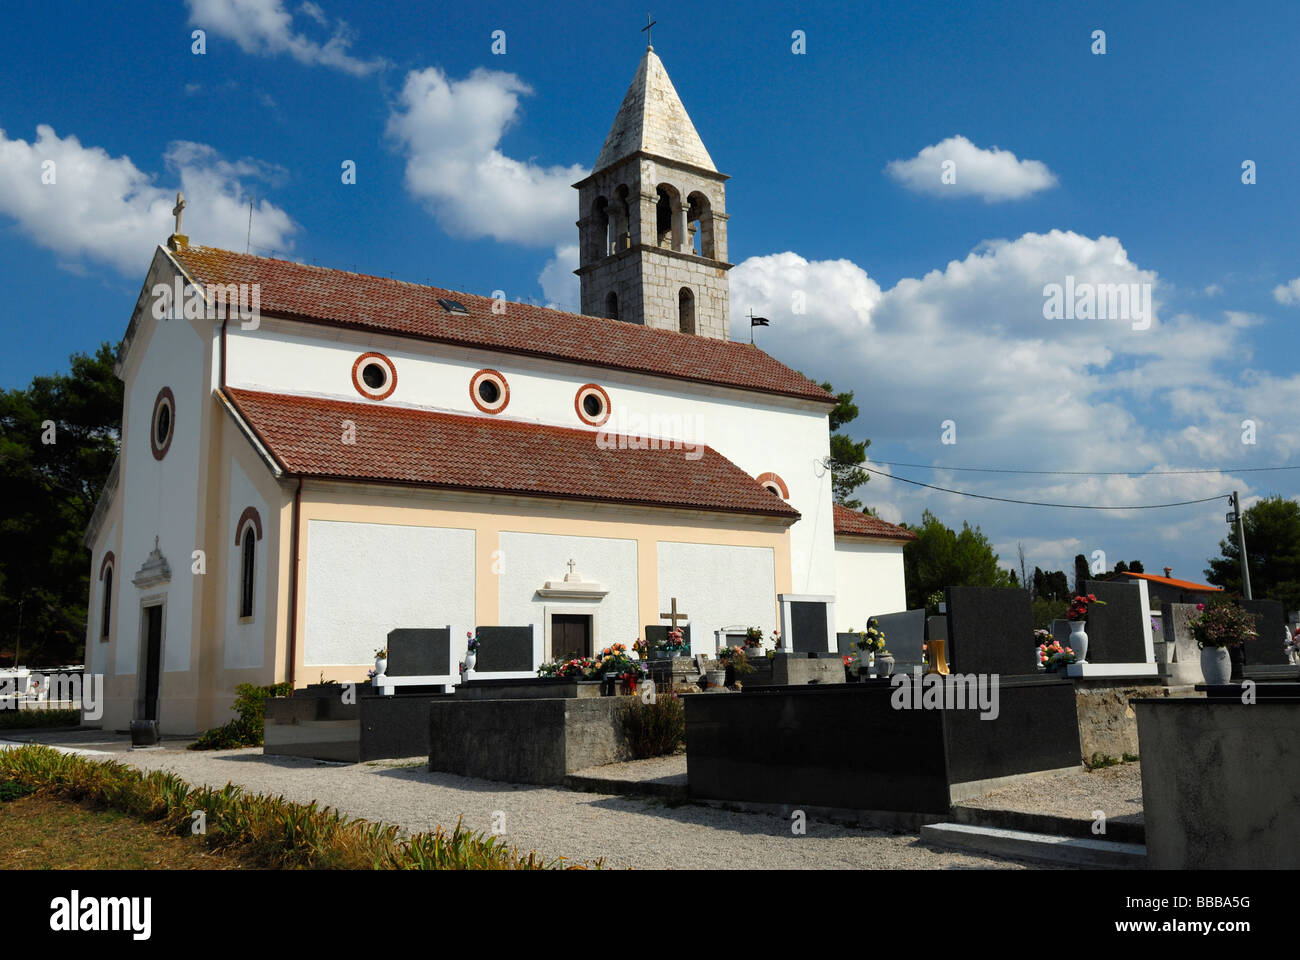 Église de campagne dans le tranquille village de pêcheurs sur l'île de Pasman Tkon sur la côte dalmate de la Croatie Banque D'Images